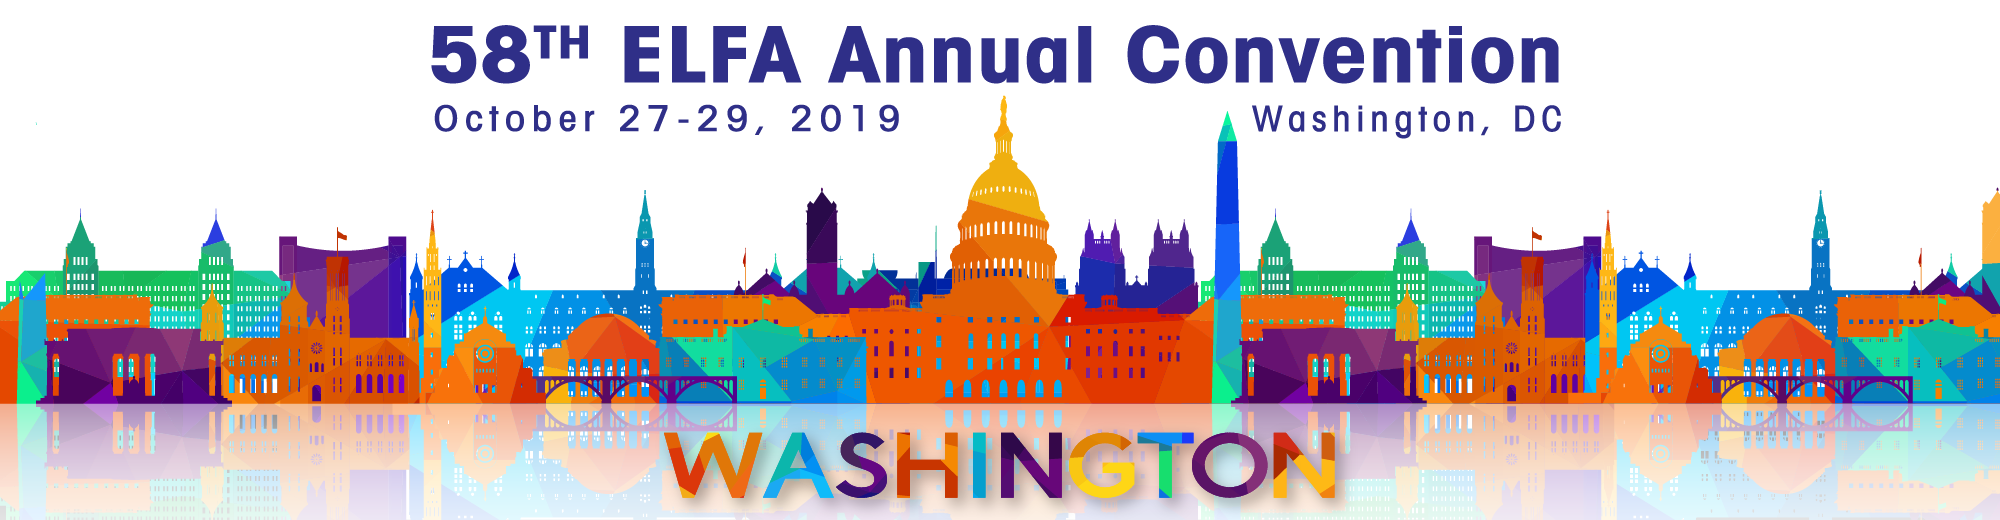 ELFA 58th Annual Convention: Washington